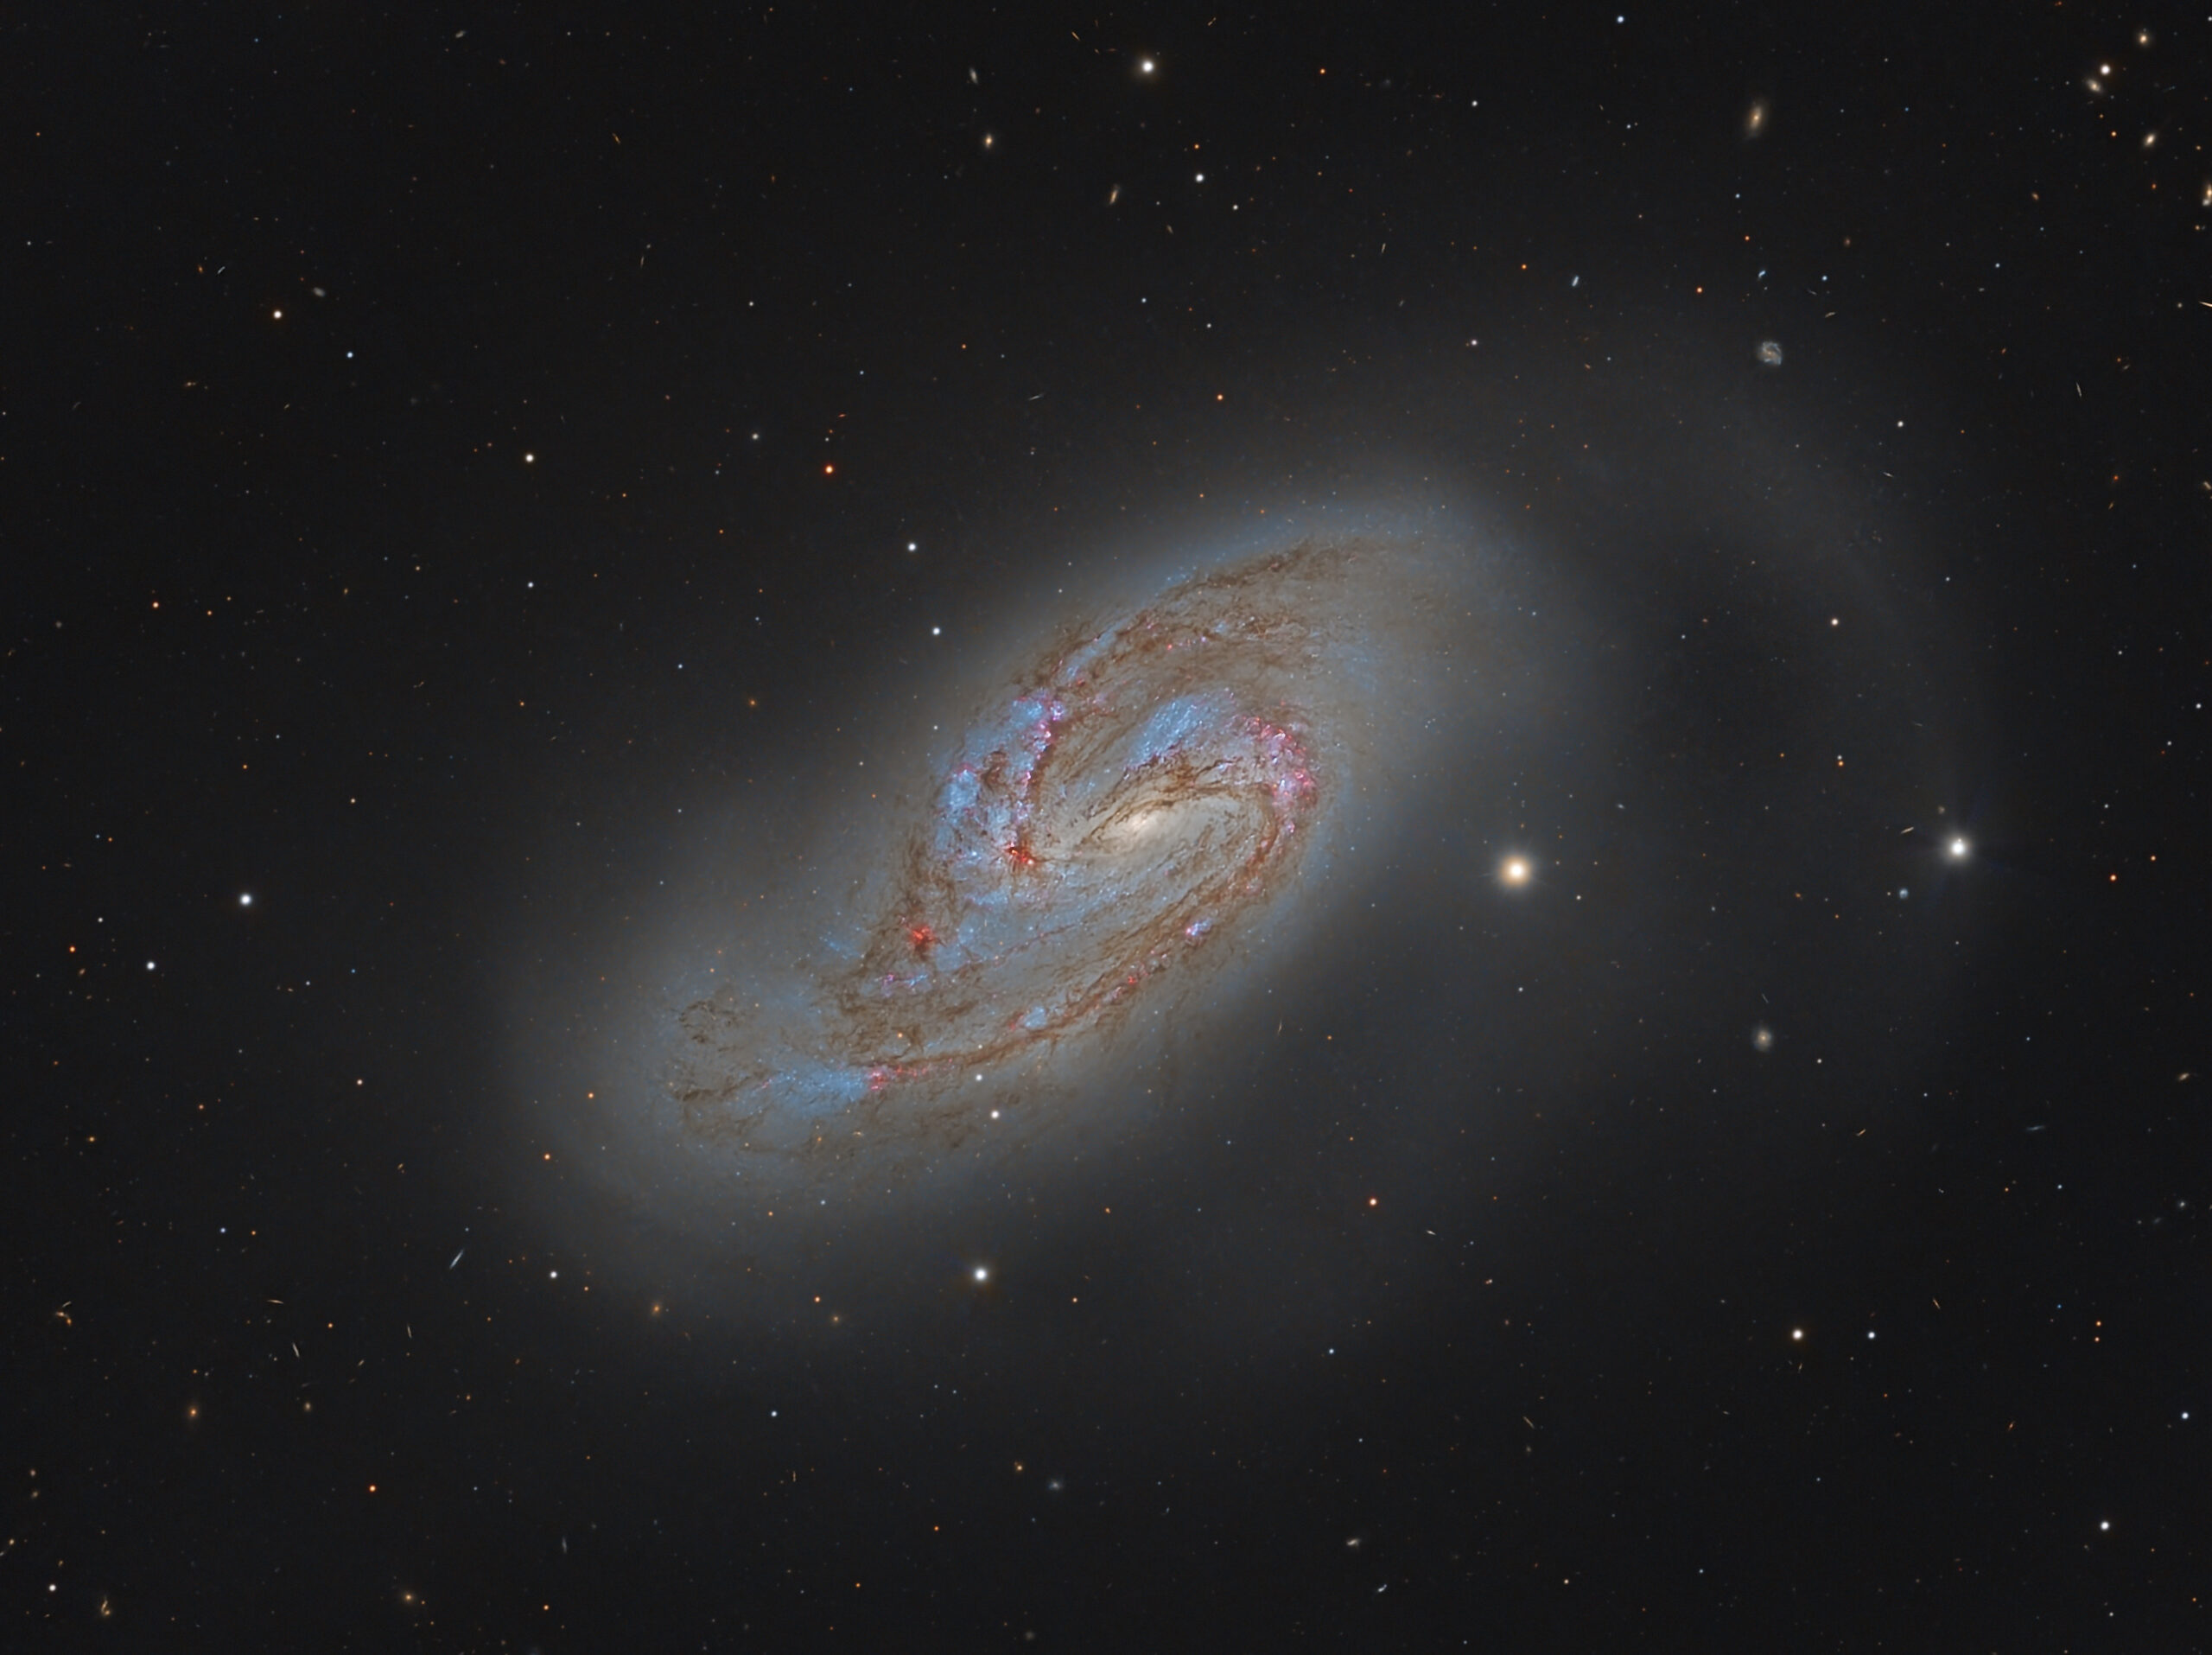 M66 (NGC 3627)